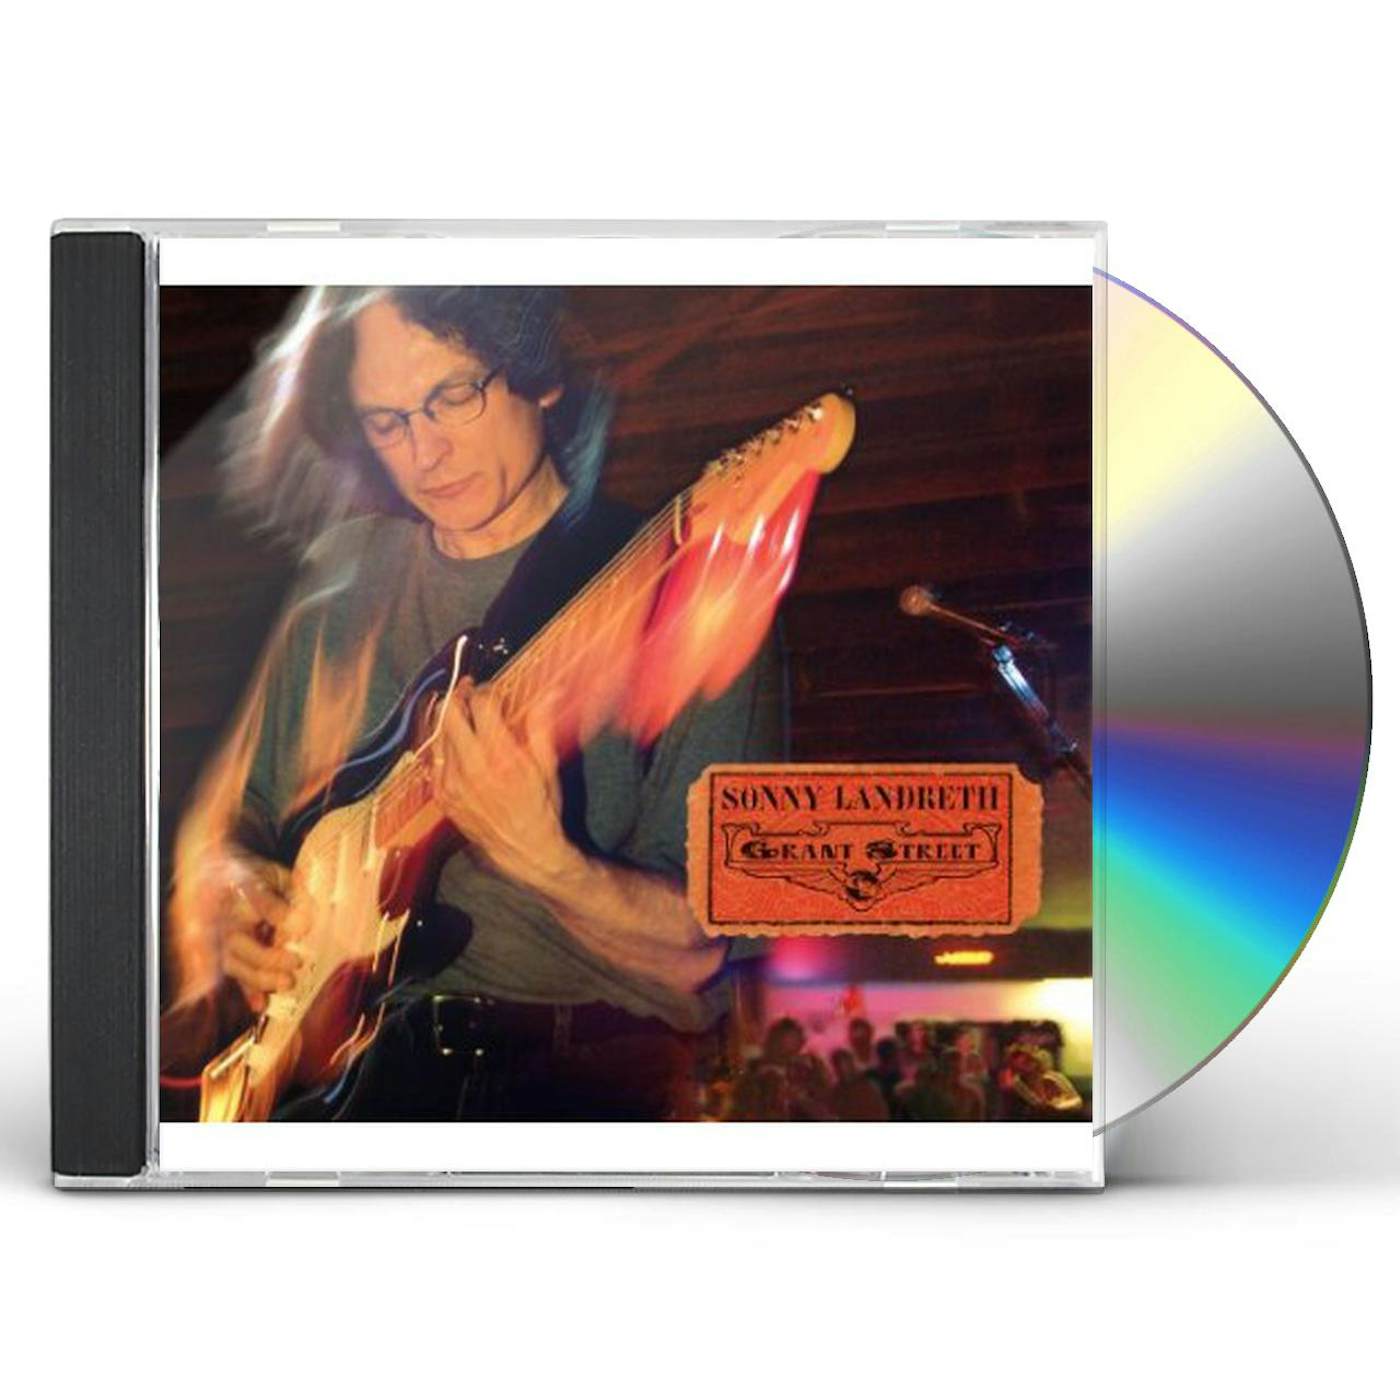 Sonny Landreth GRANT STREET CD